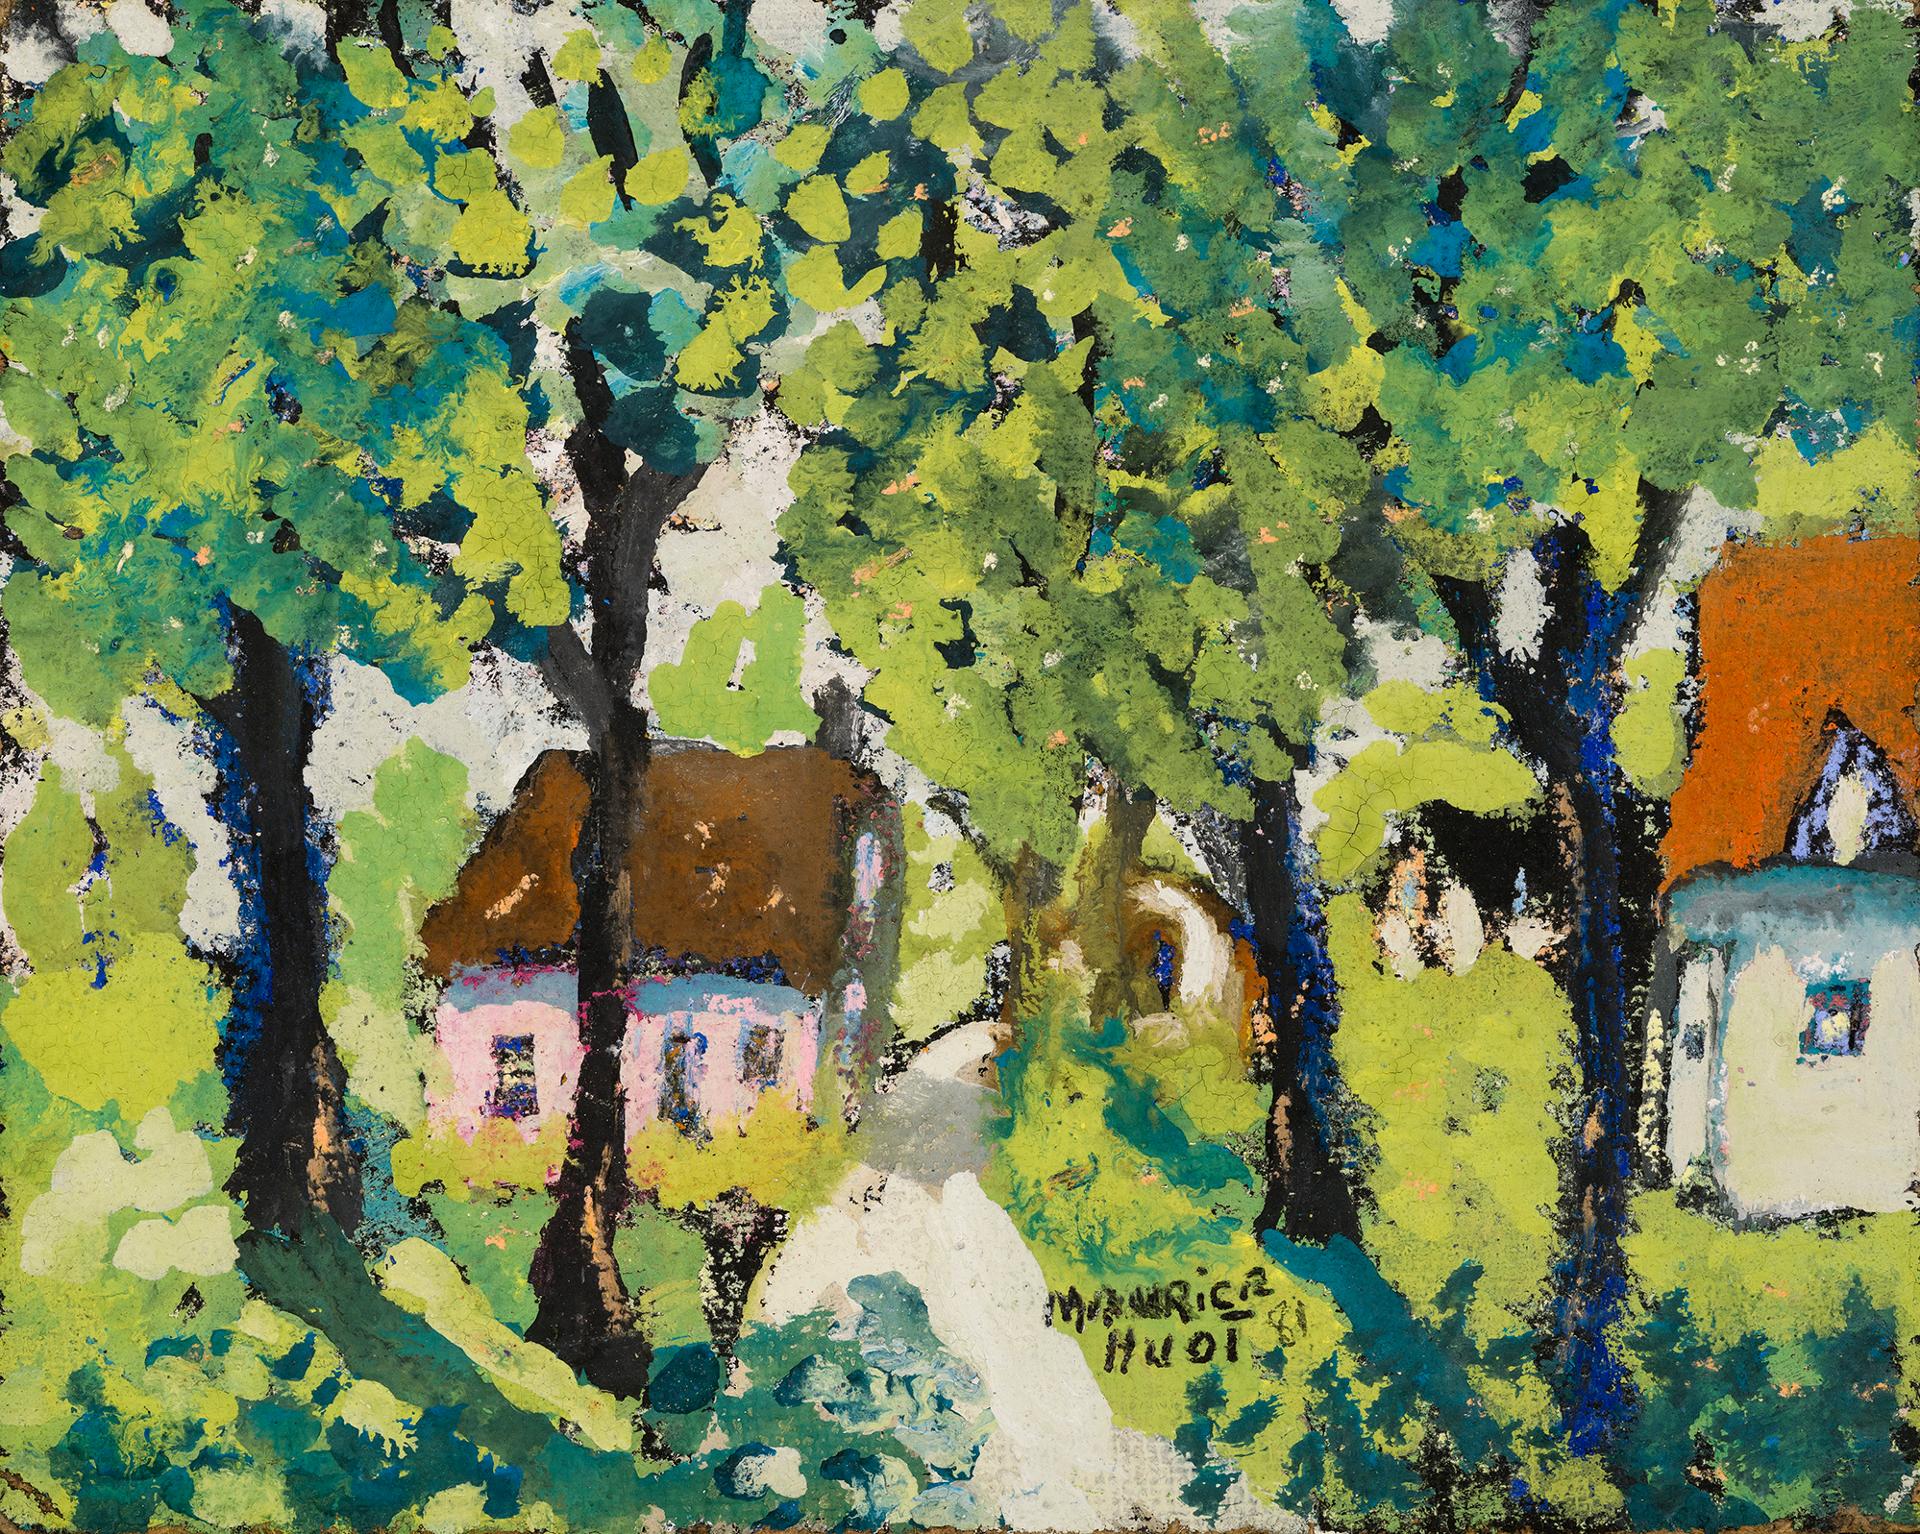 Maurice Huot - Maison sous les arbres, 1981